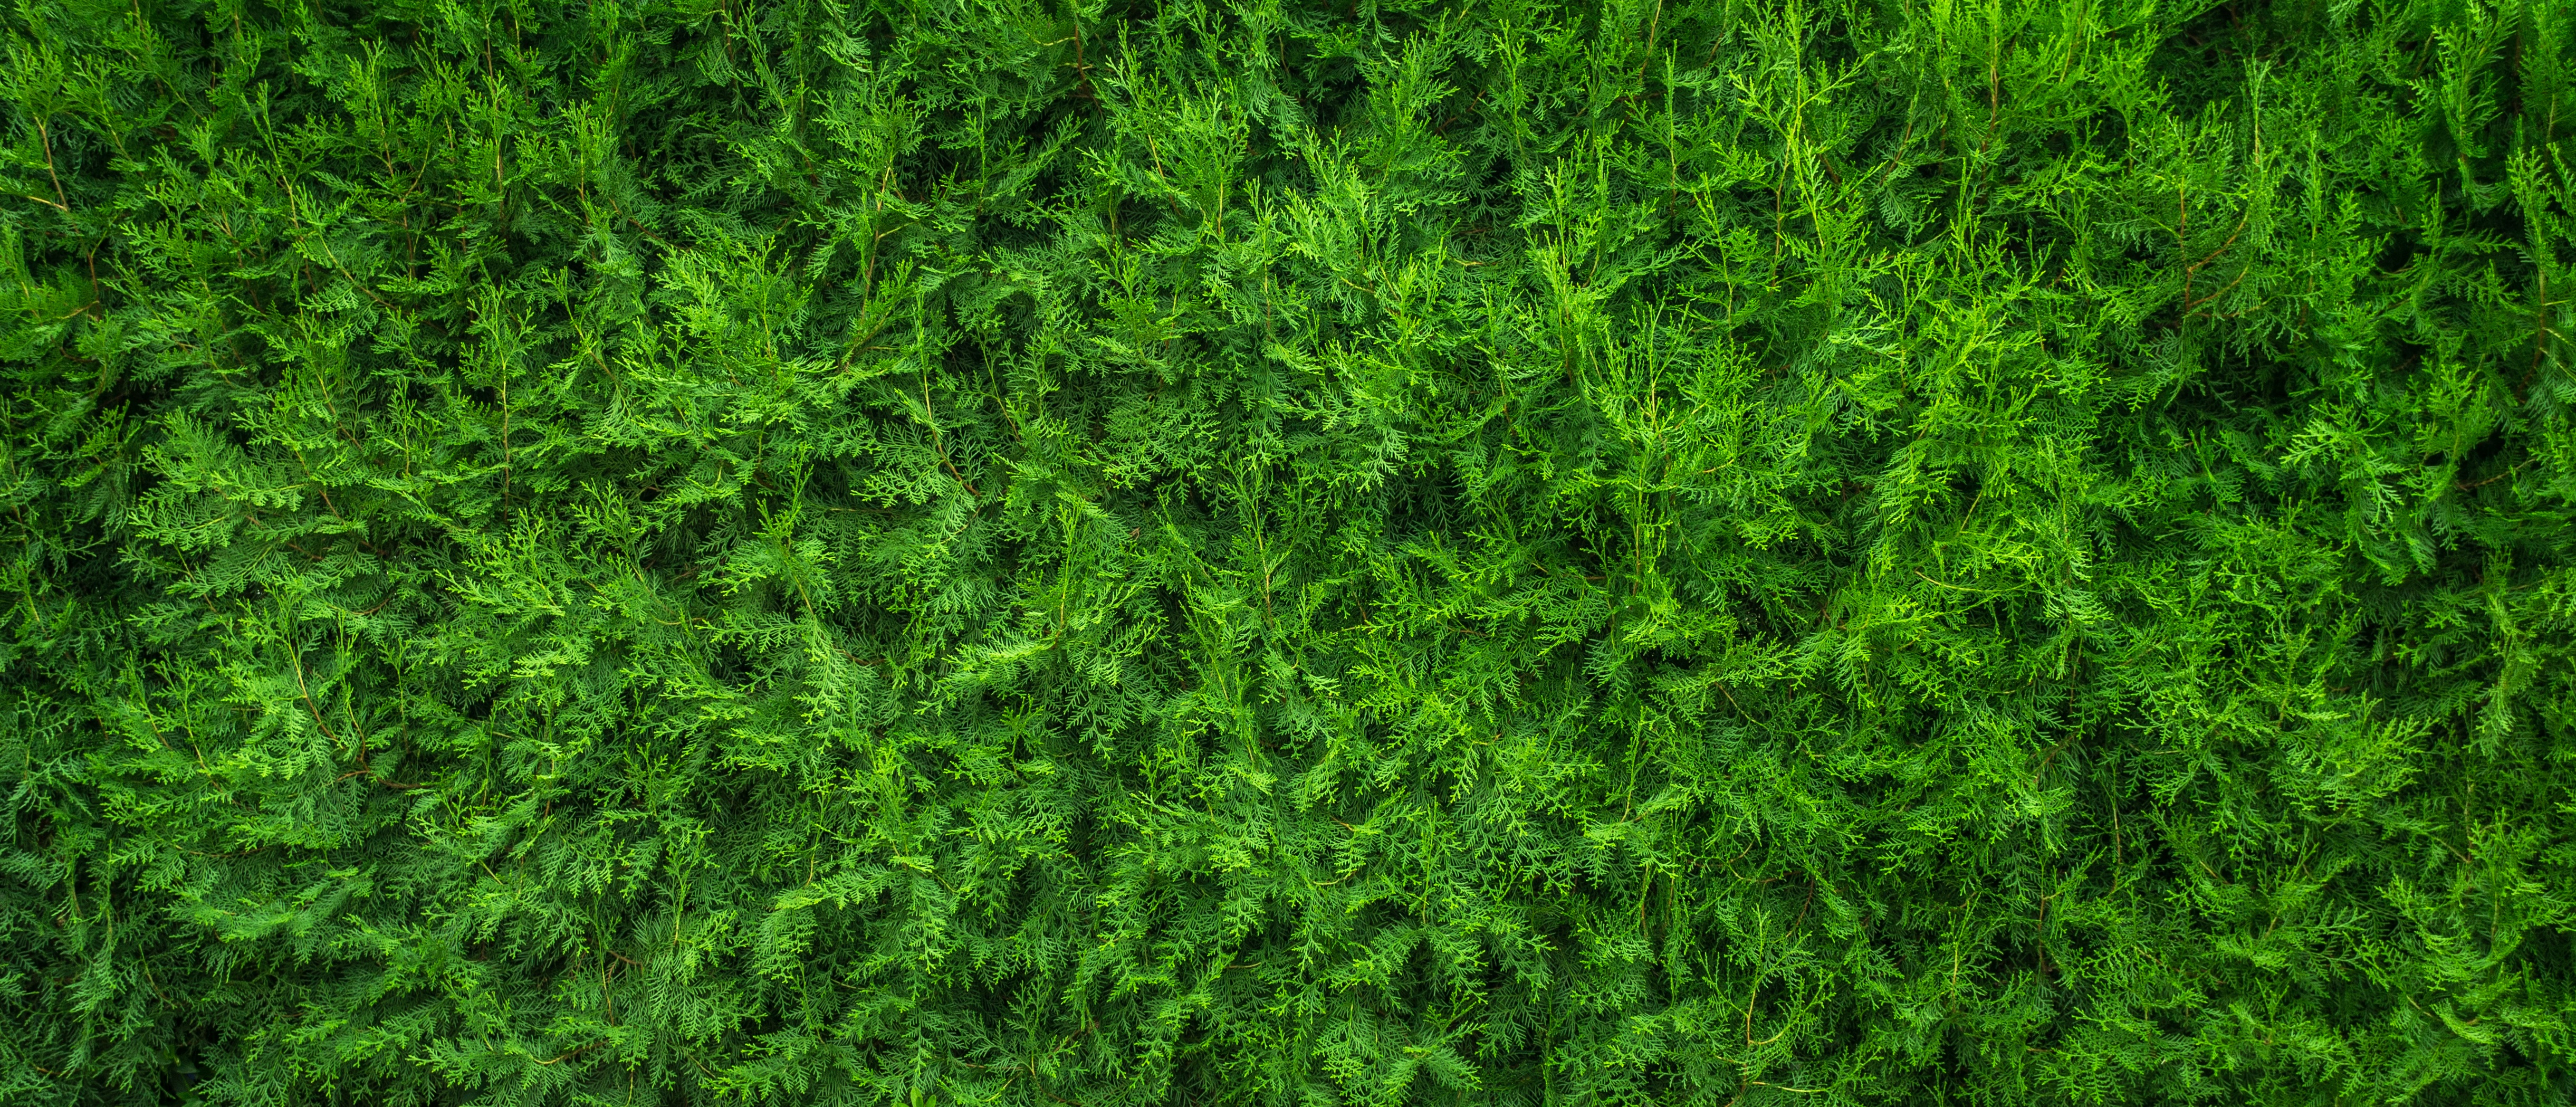 Фото природа, трава, растение, древесина, газон, текстура, лист, цветок, мох, дикие, узор, зелёный, рабочий стол, почва, растения - бесплатные картинки на Fonwall